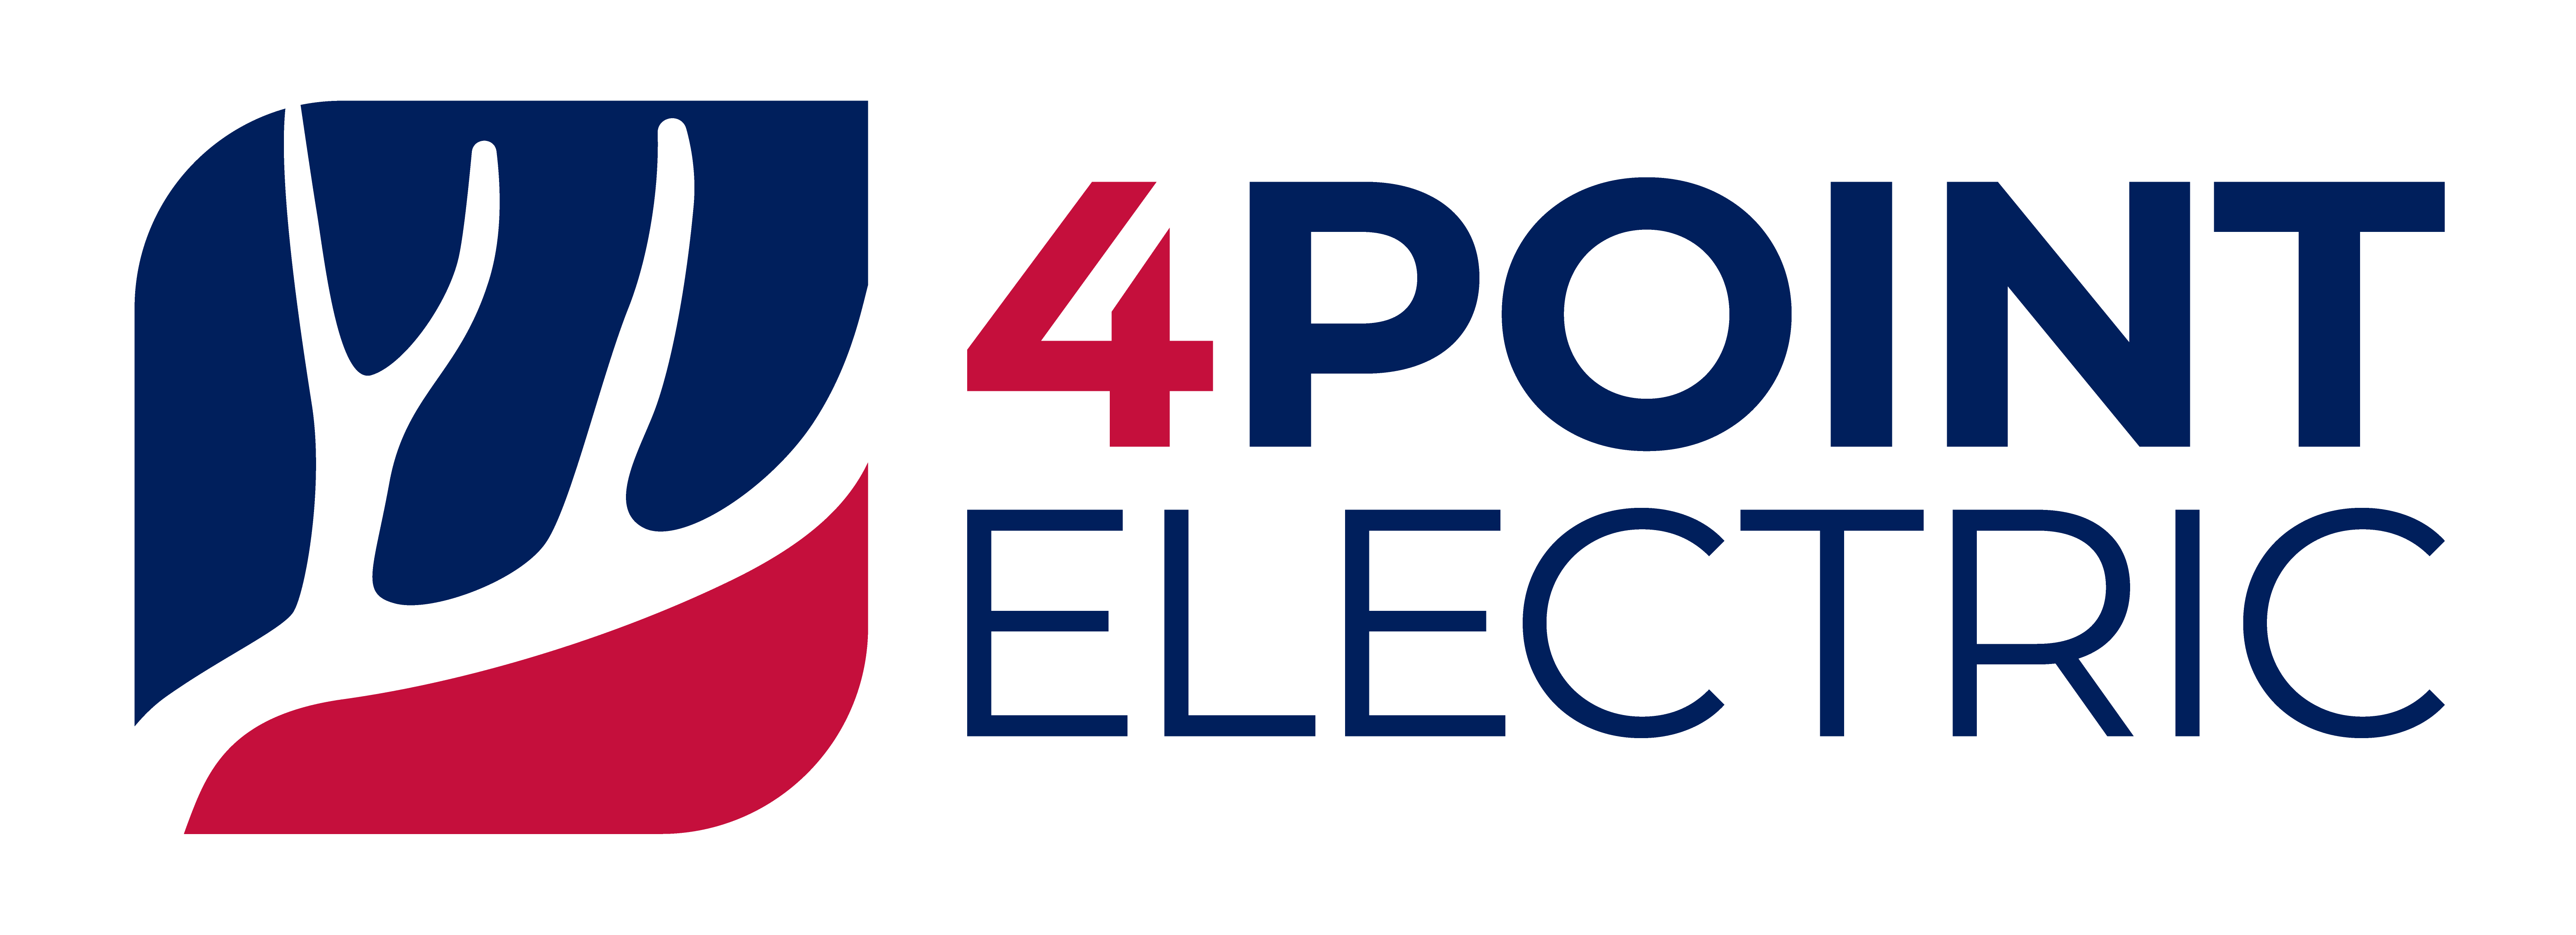 4 Point Electric LLC Logo